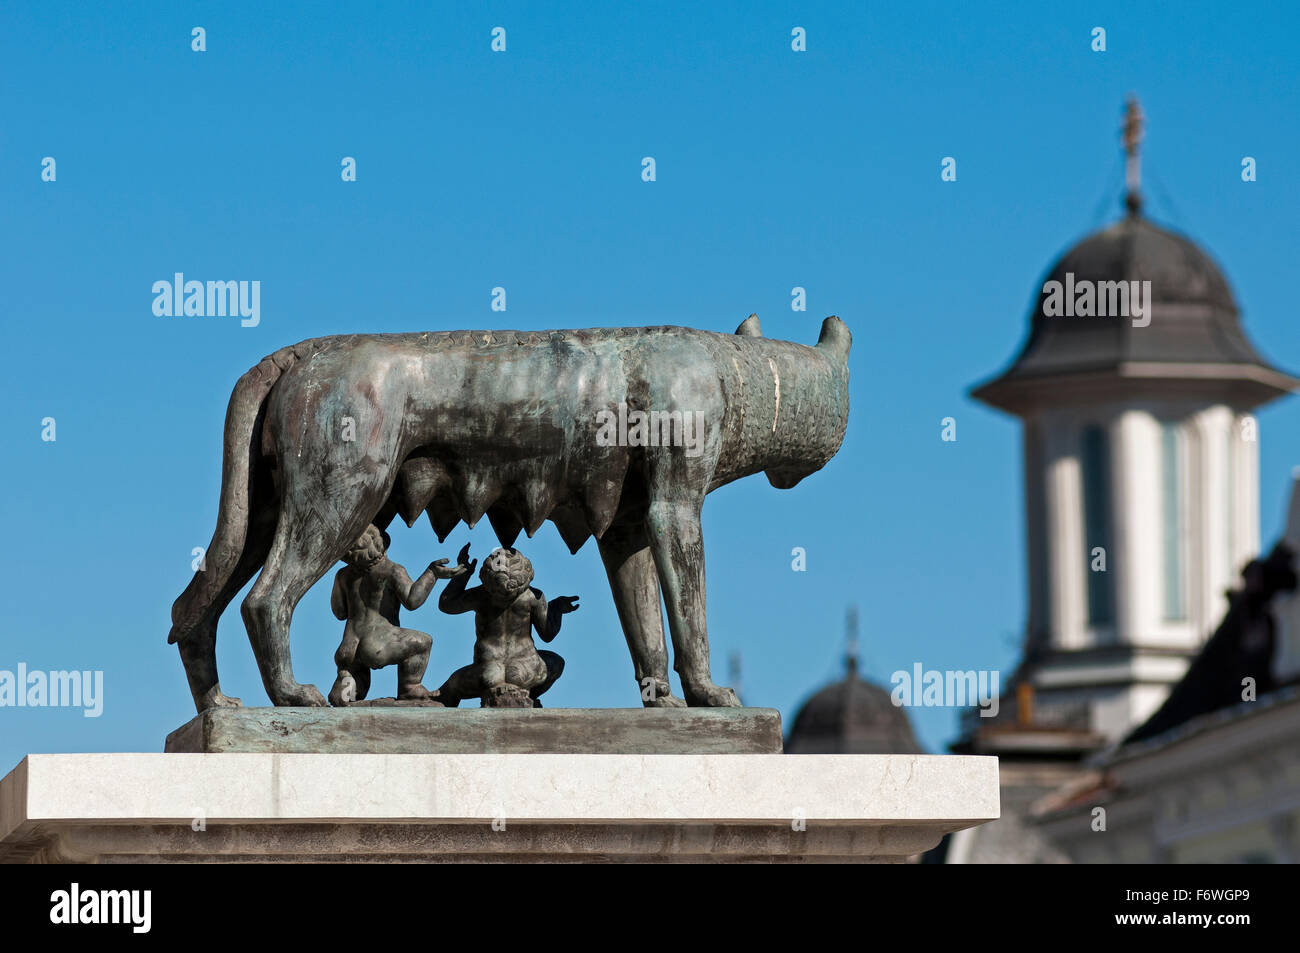 Monumento en la Piata Unirii, Cluj-Napoca, Transilvania, Rumania Foto de stock